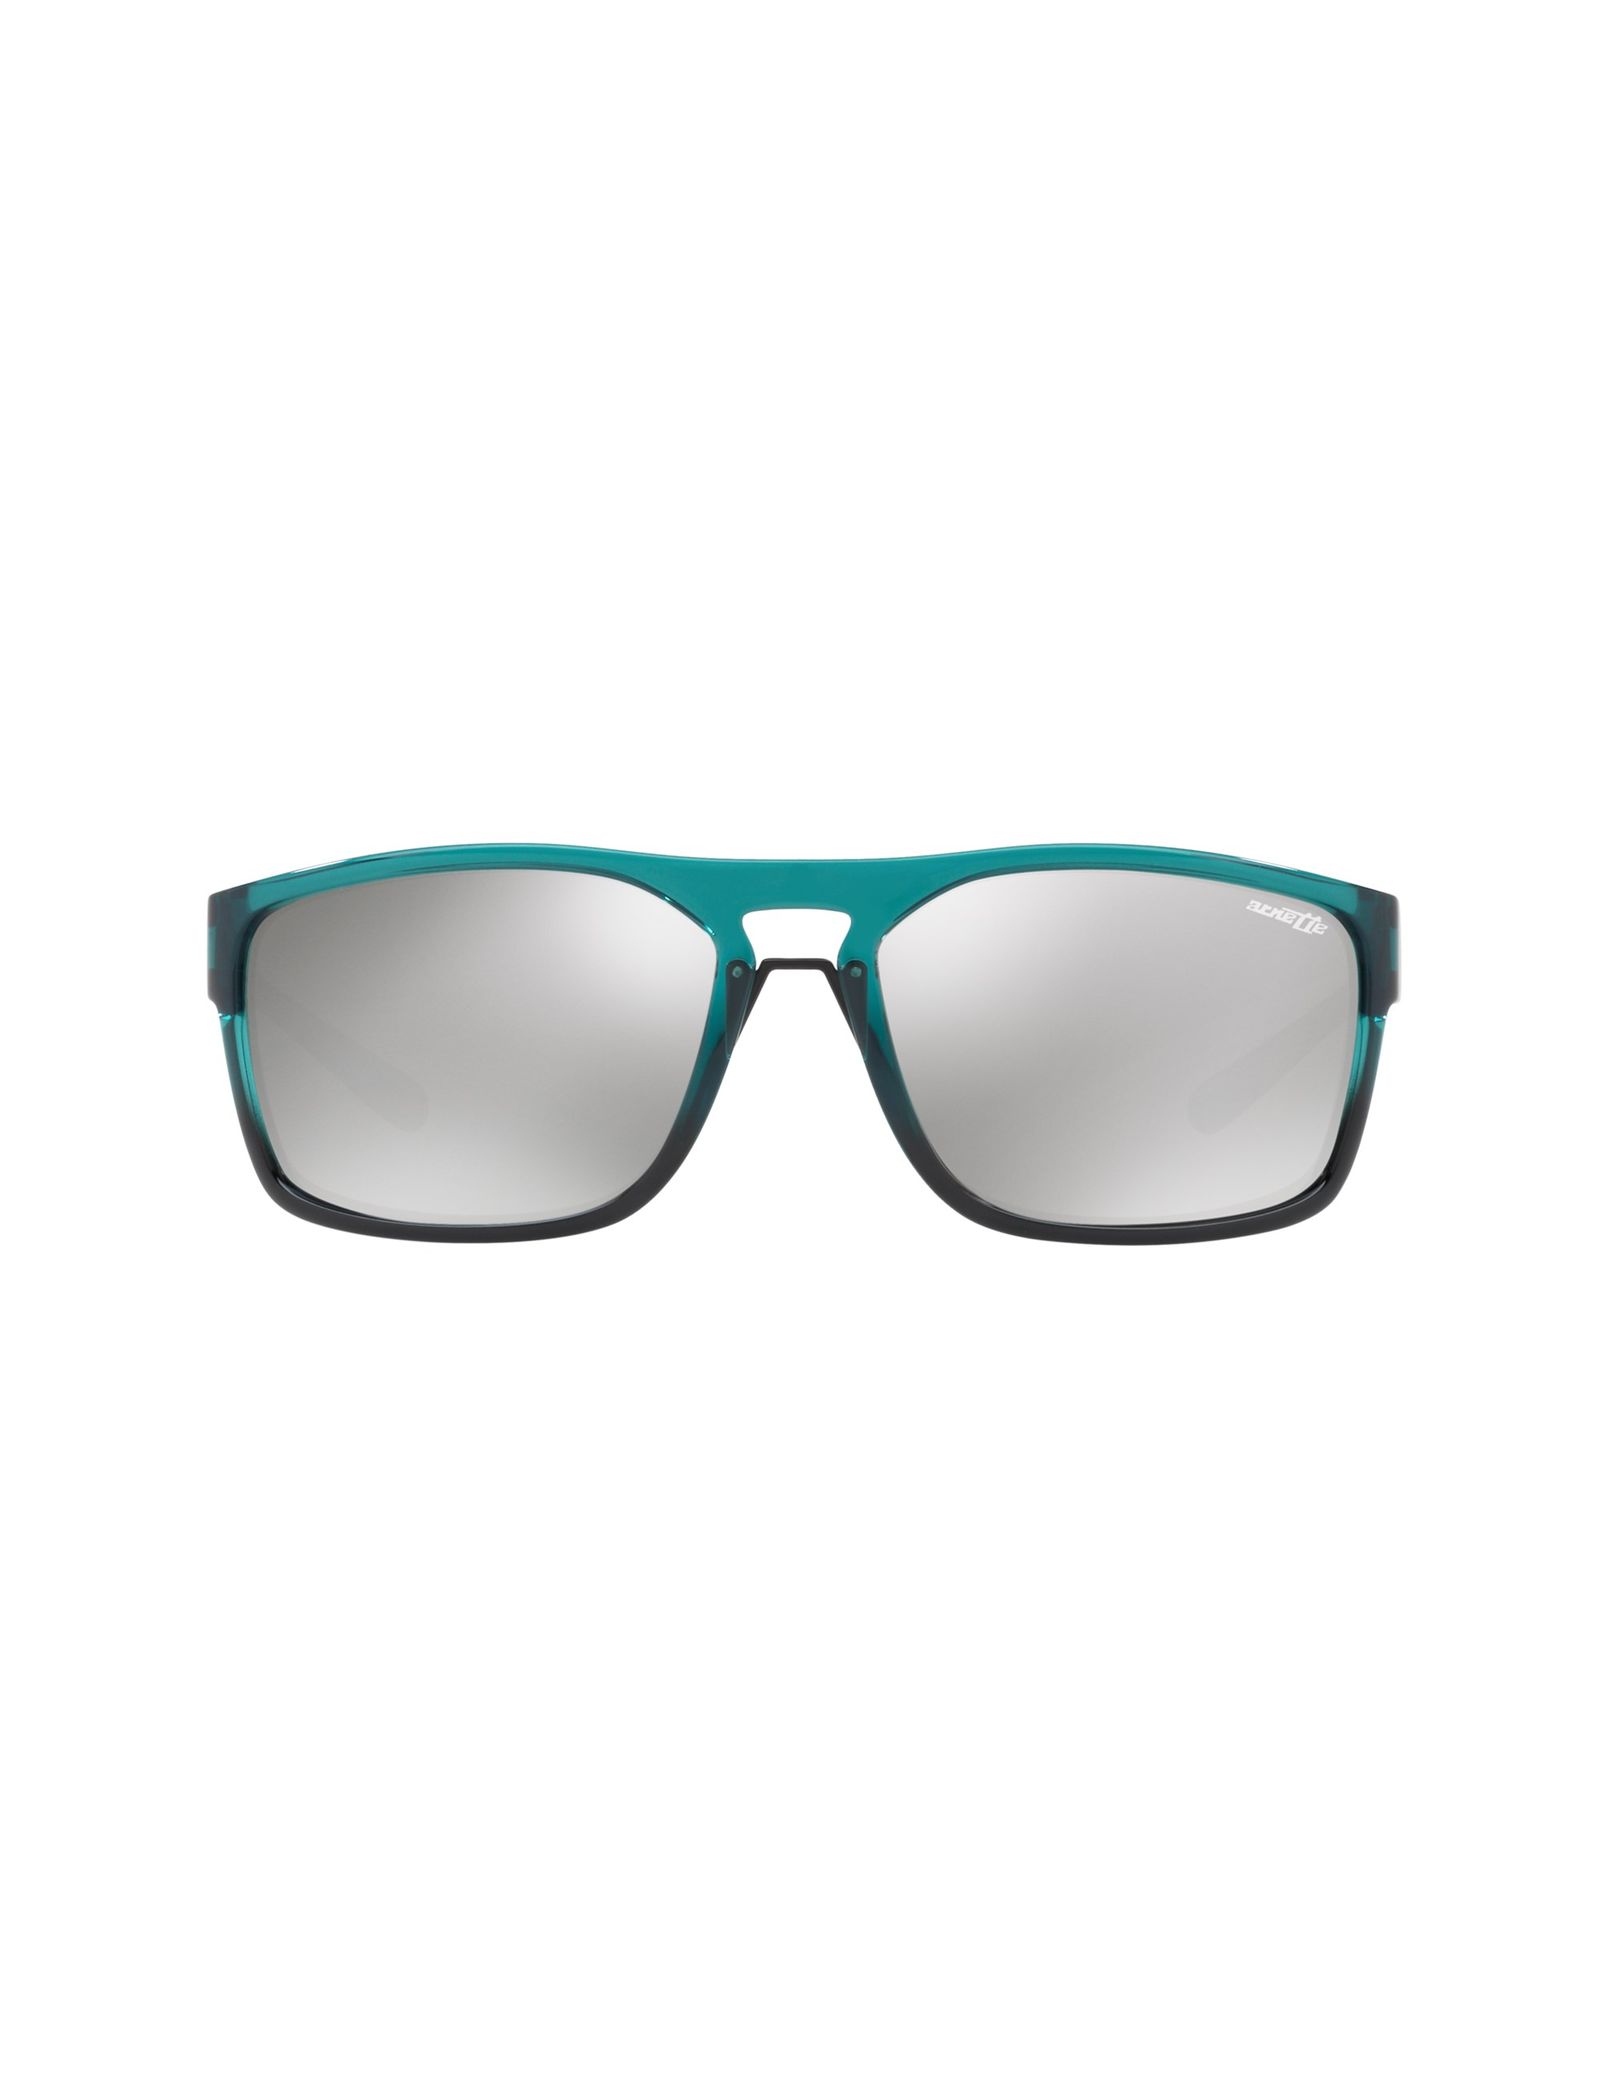 عینک آفتابی مستطیلی مردانه - آرنت - سبز آبي - 1